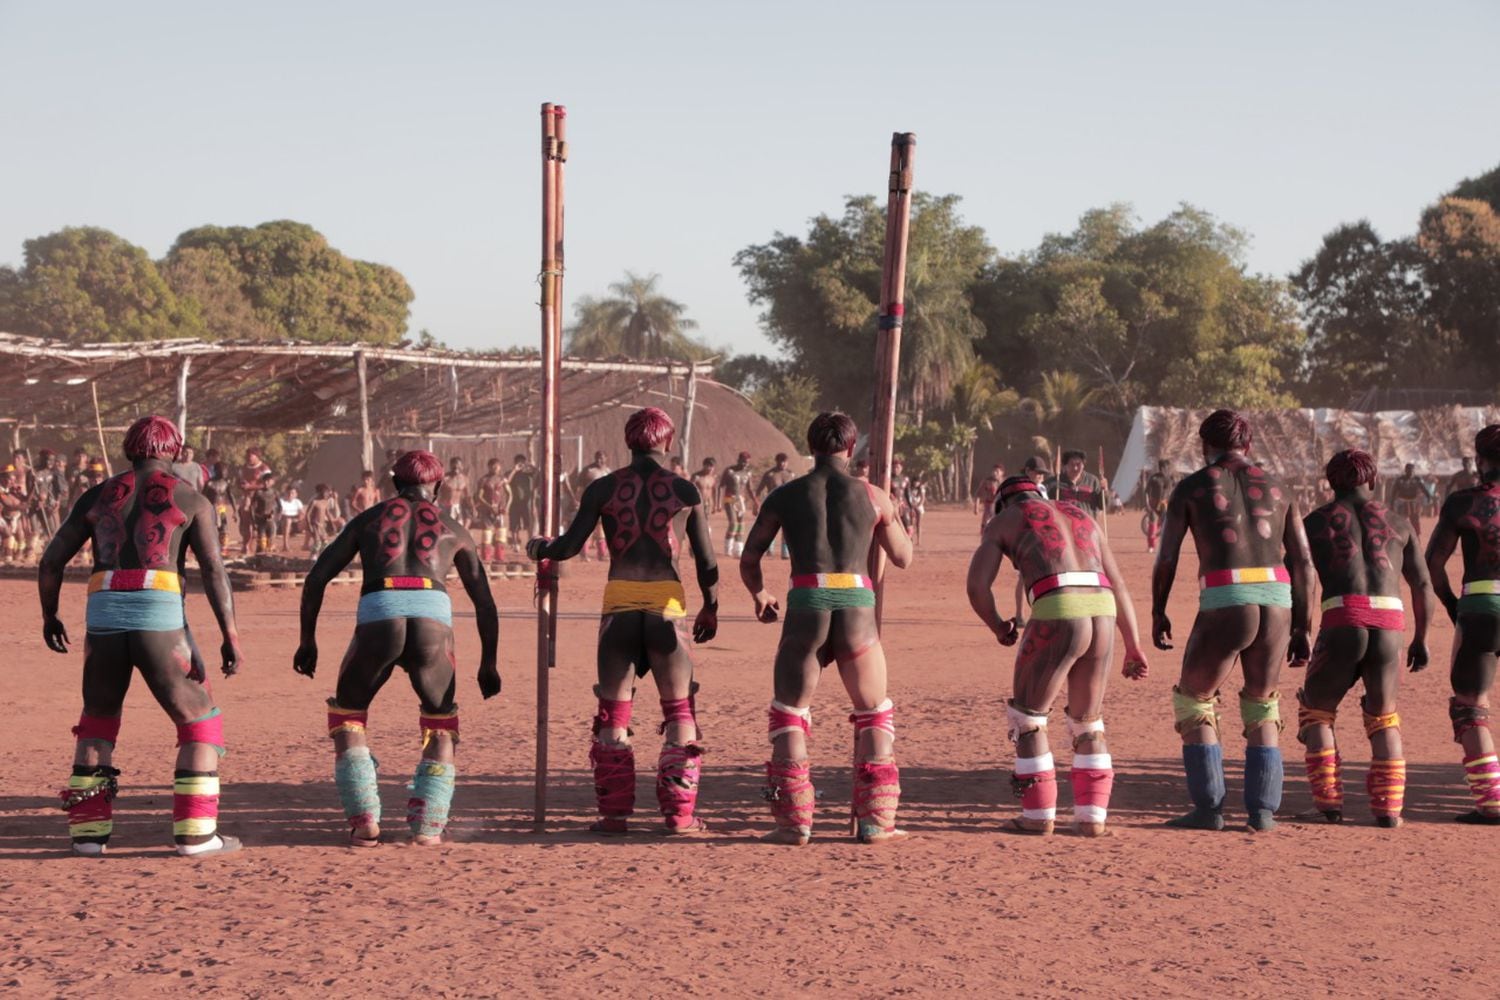 Indígenas na festa do Kuarup, um ritual para chorar os mortos, no Xingu.